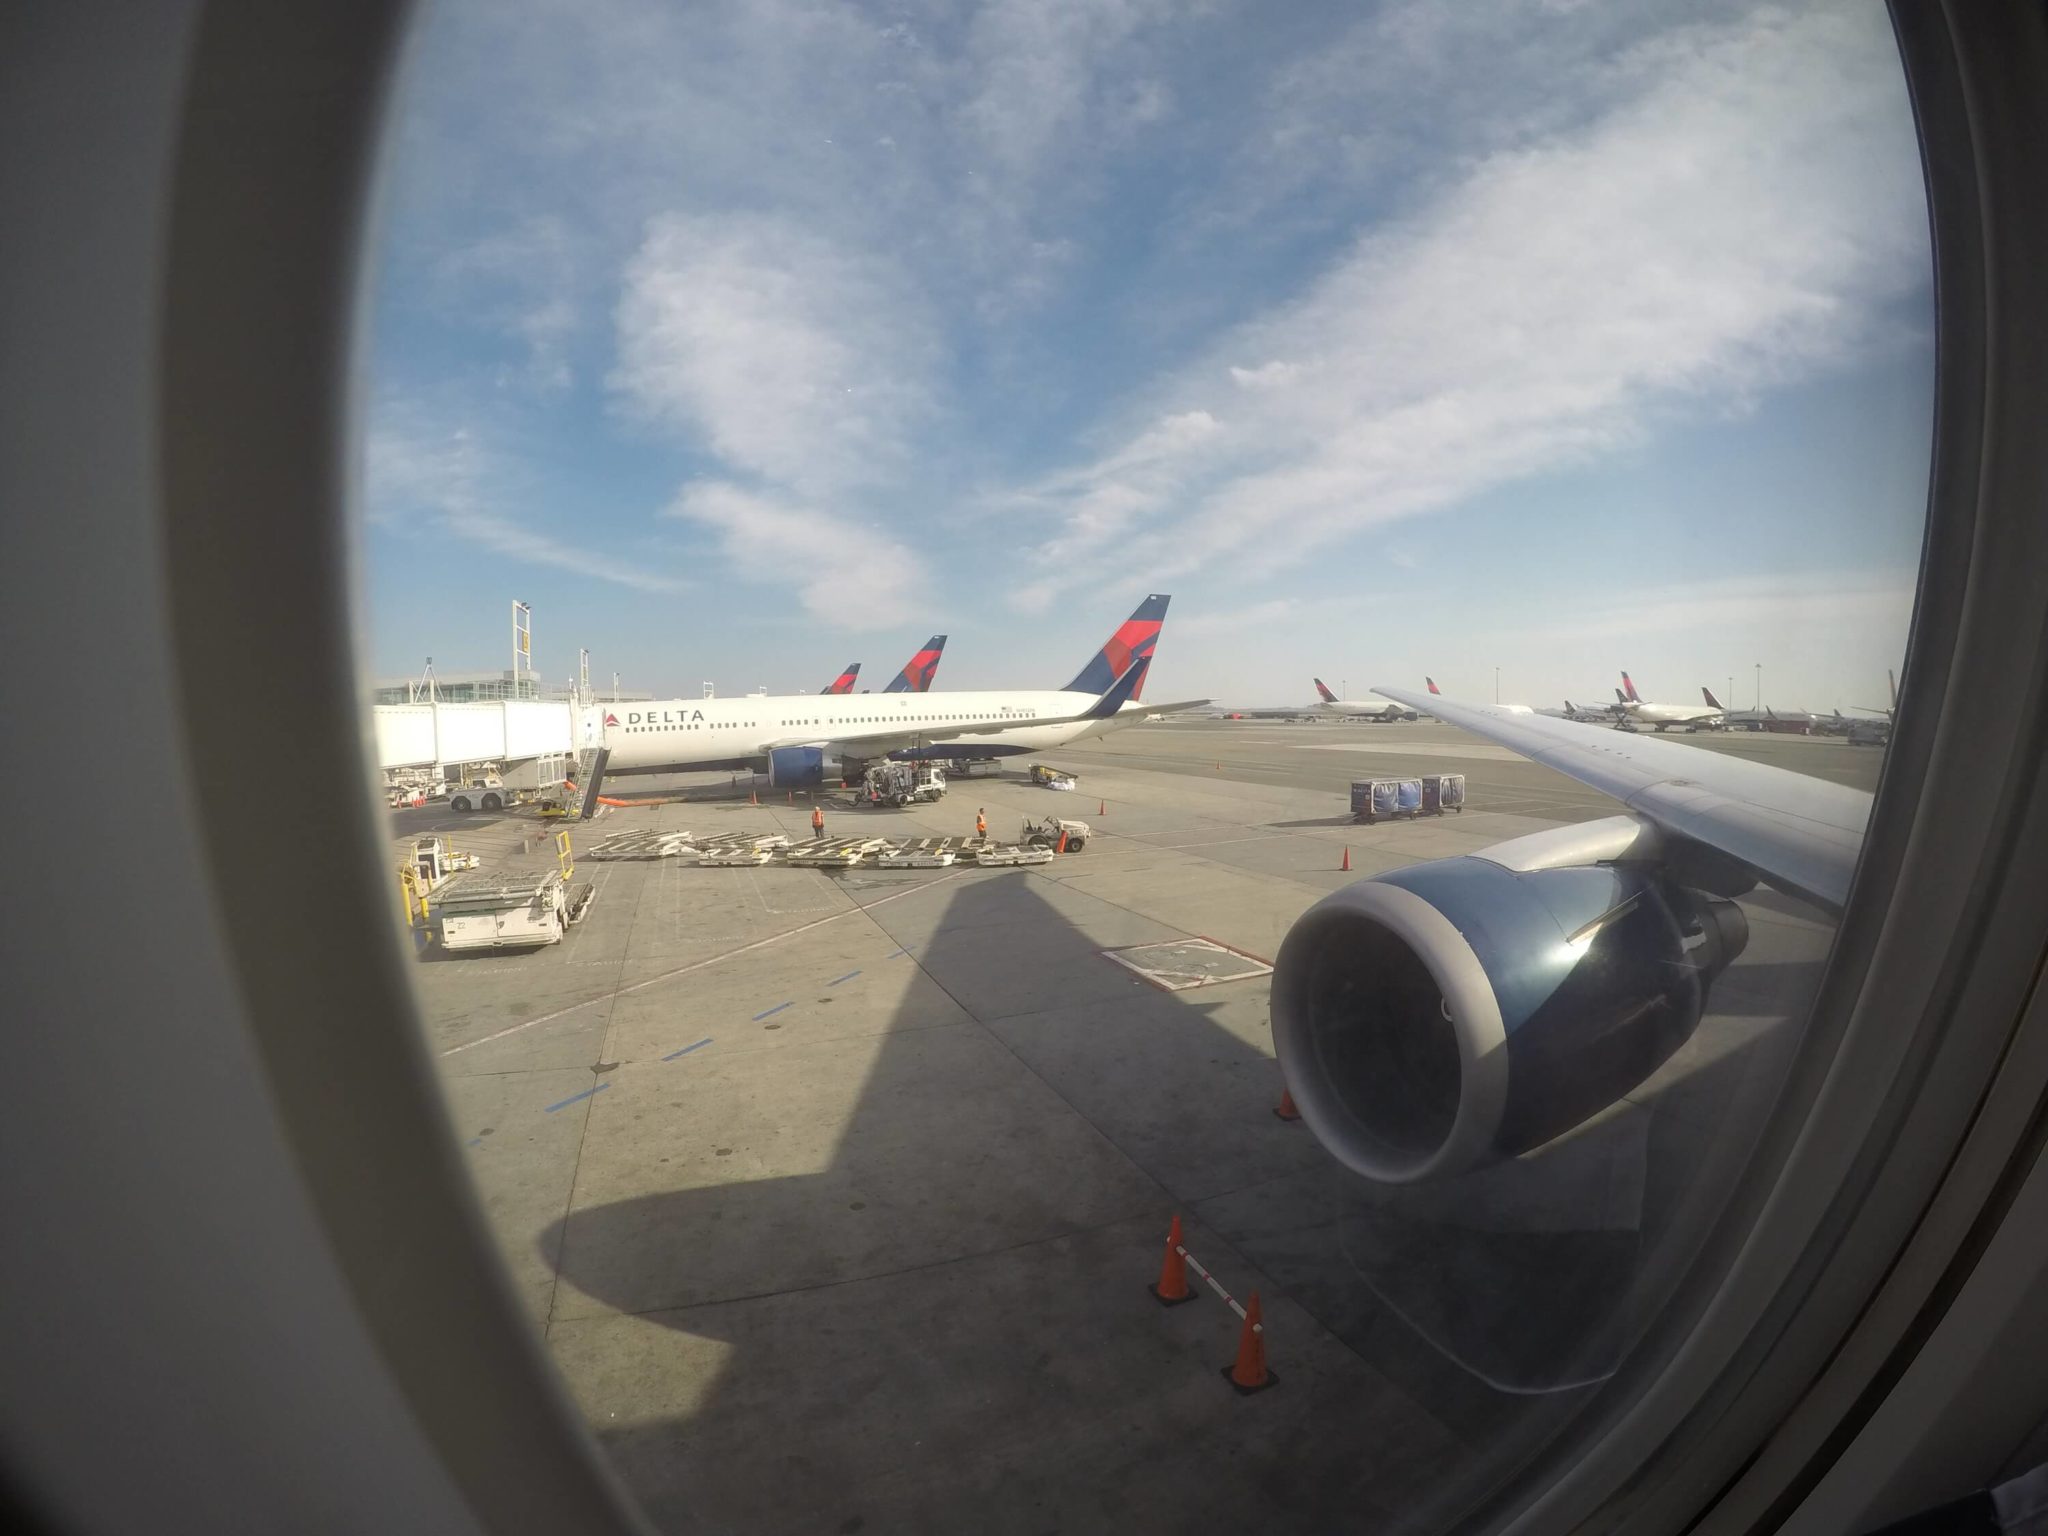 A bordo del Boeing 767 de Delta en el aeropuerto JFK de New York